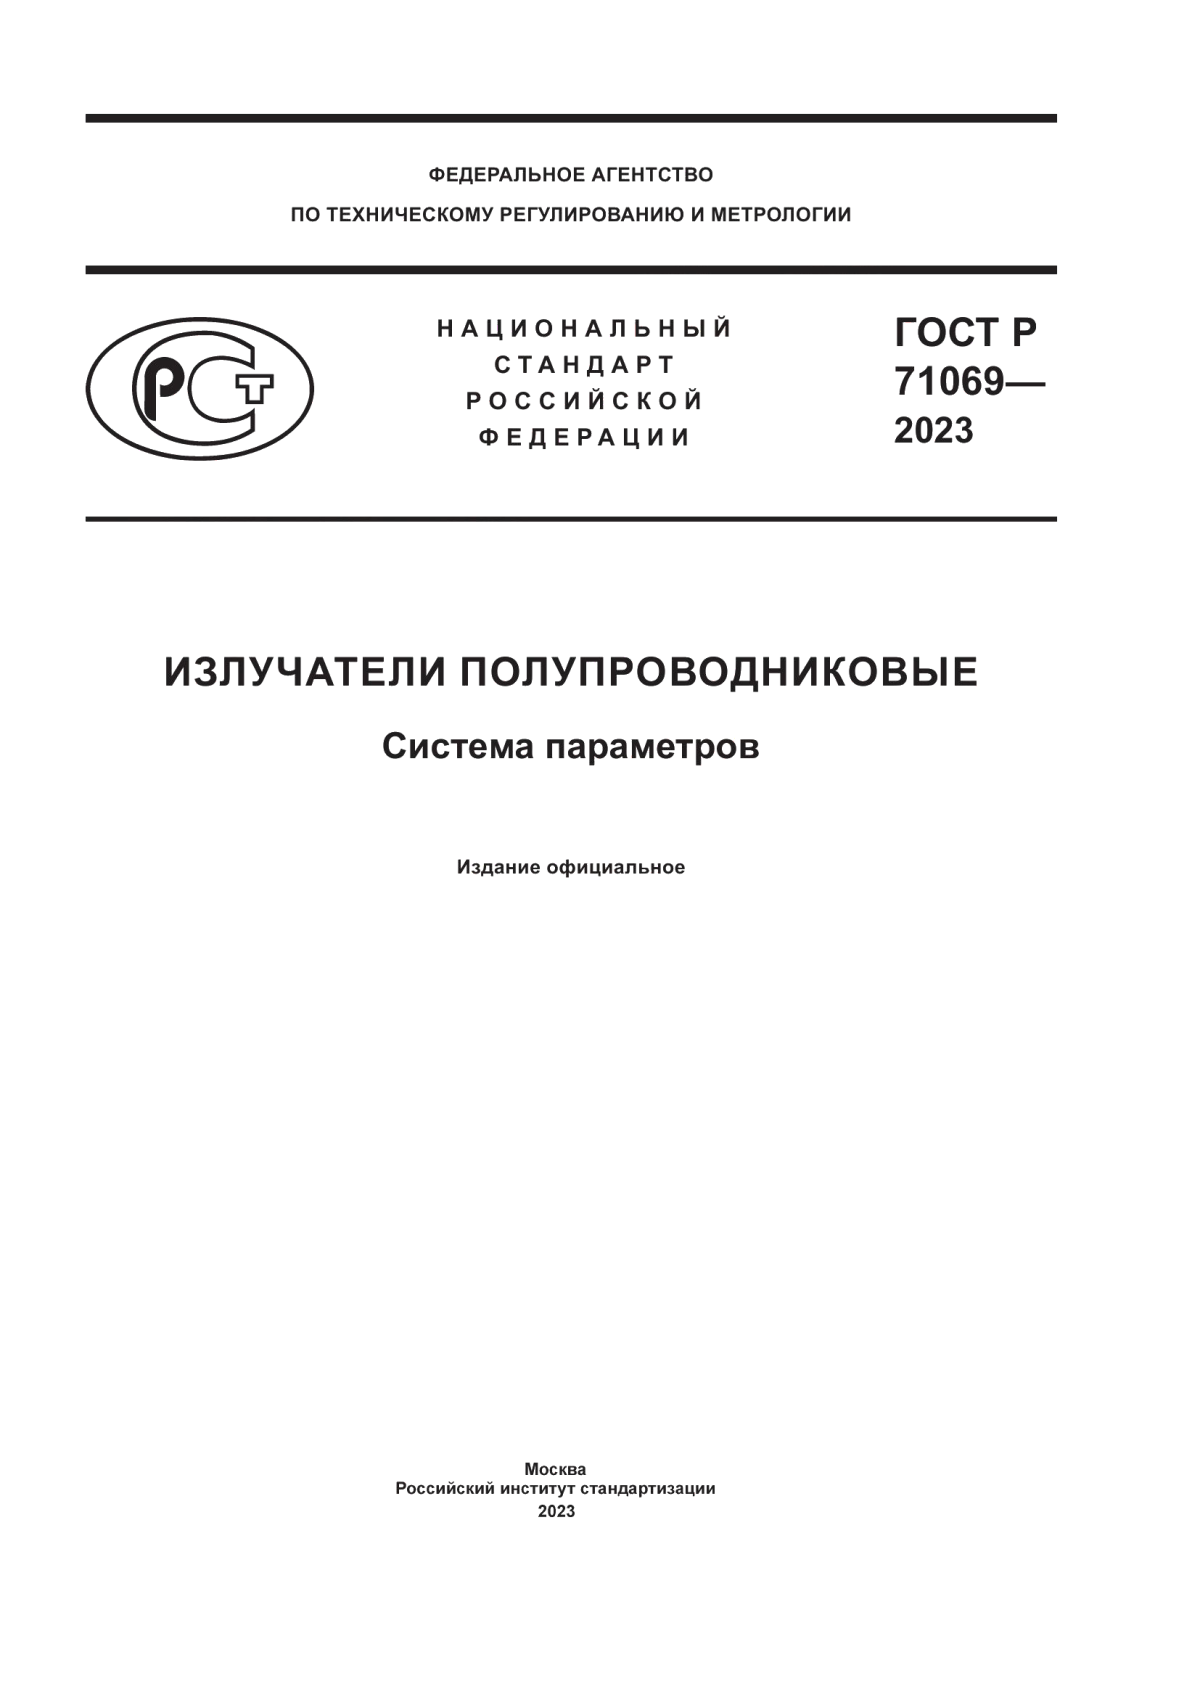 ГОСТ Р 71069-2023 Излучатели полупроводниковые. Система параметров